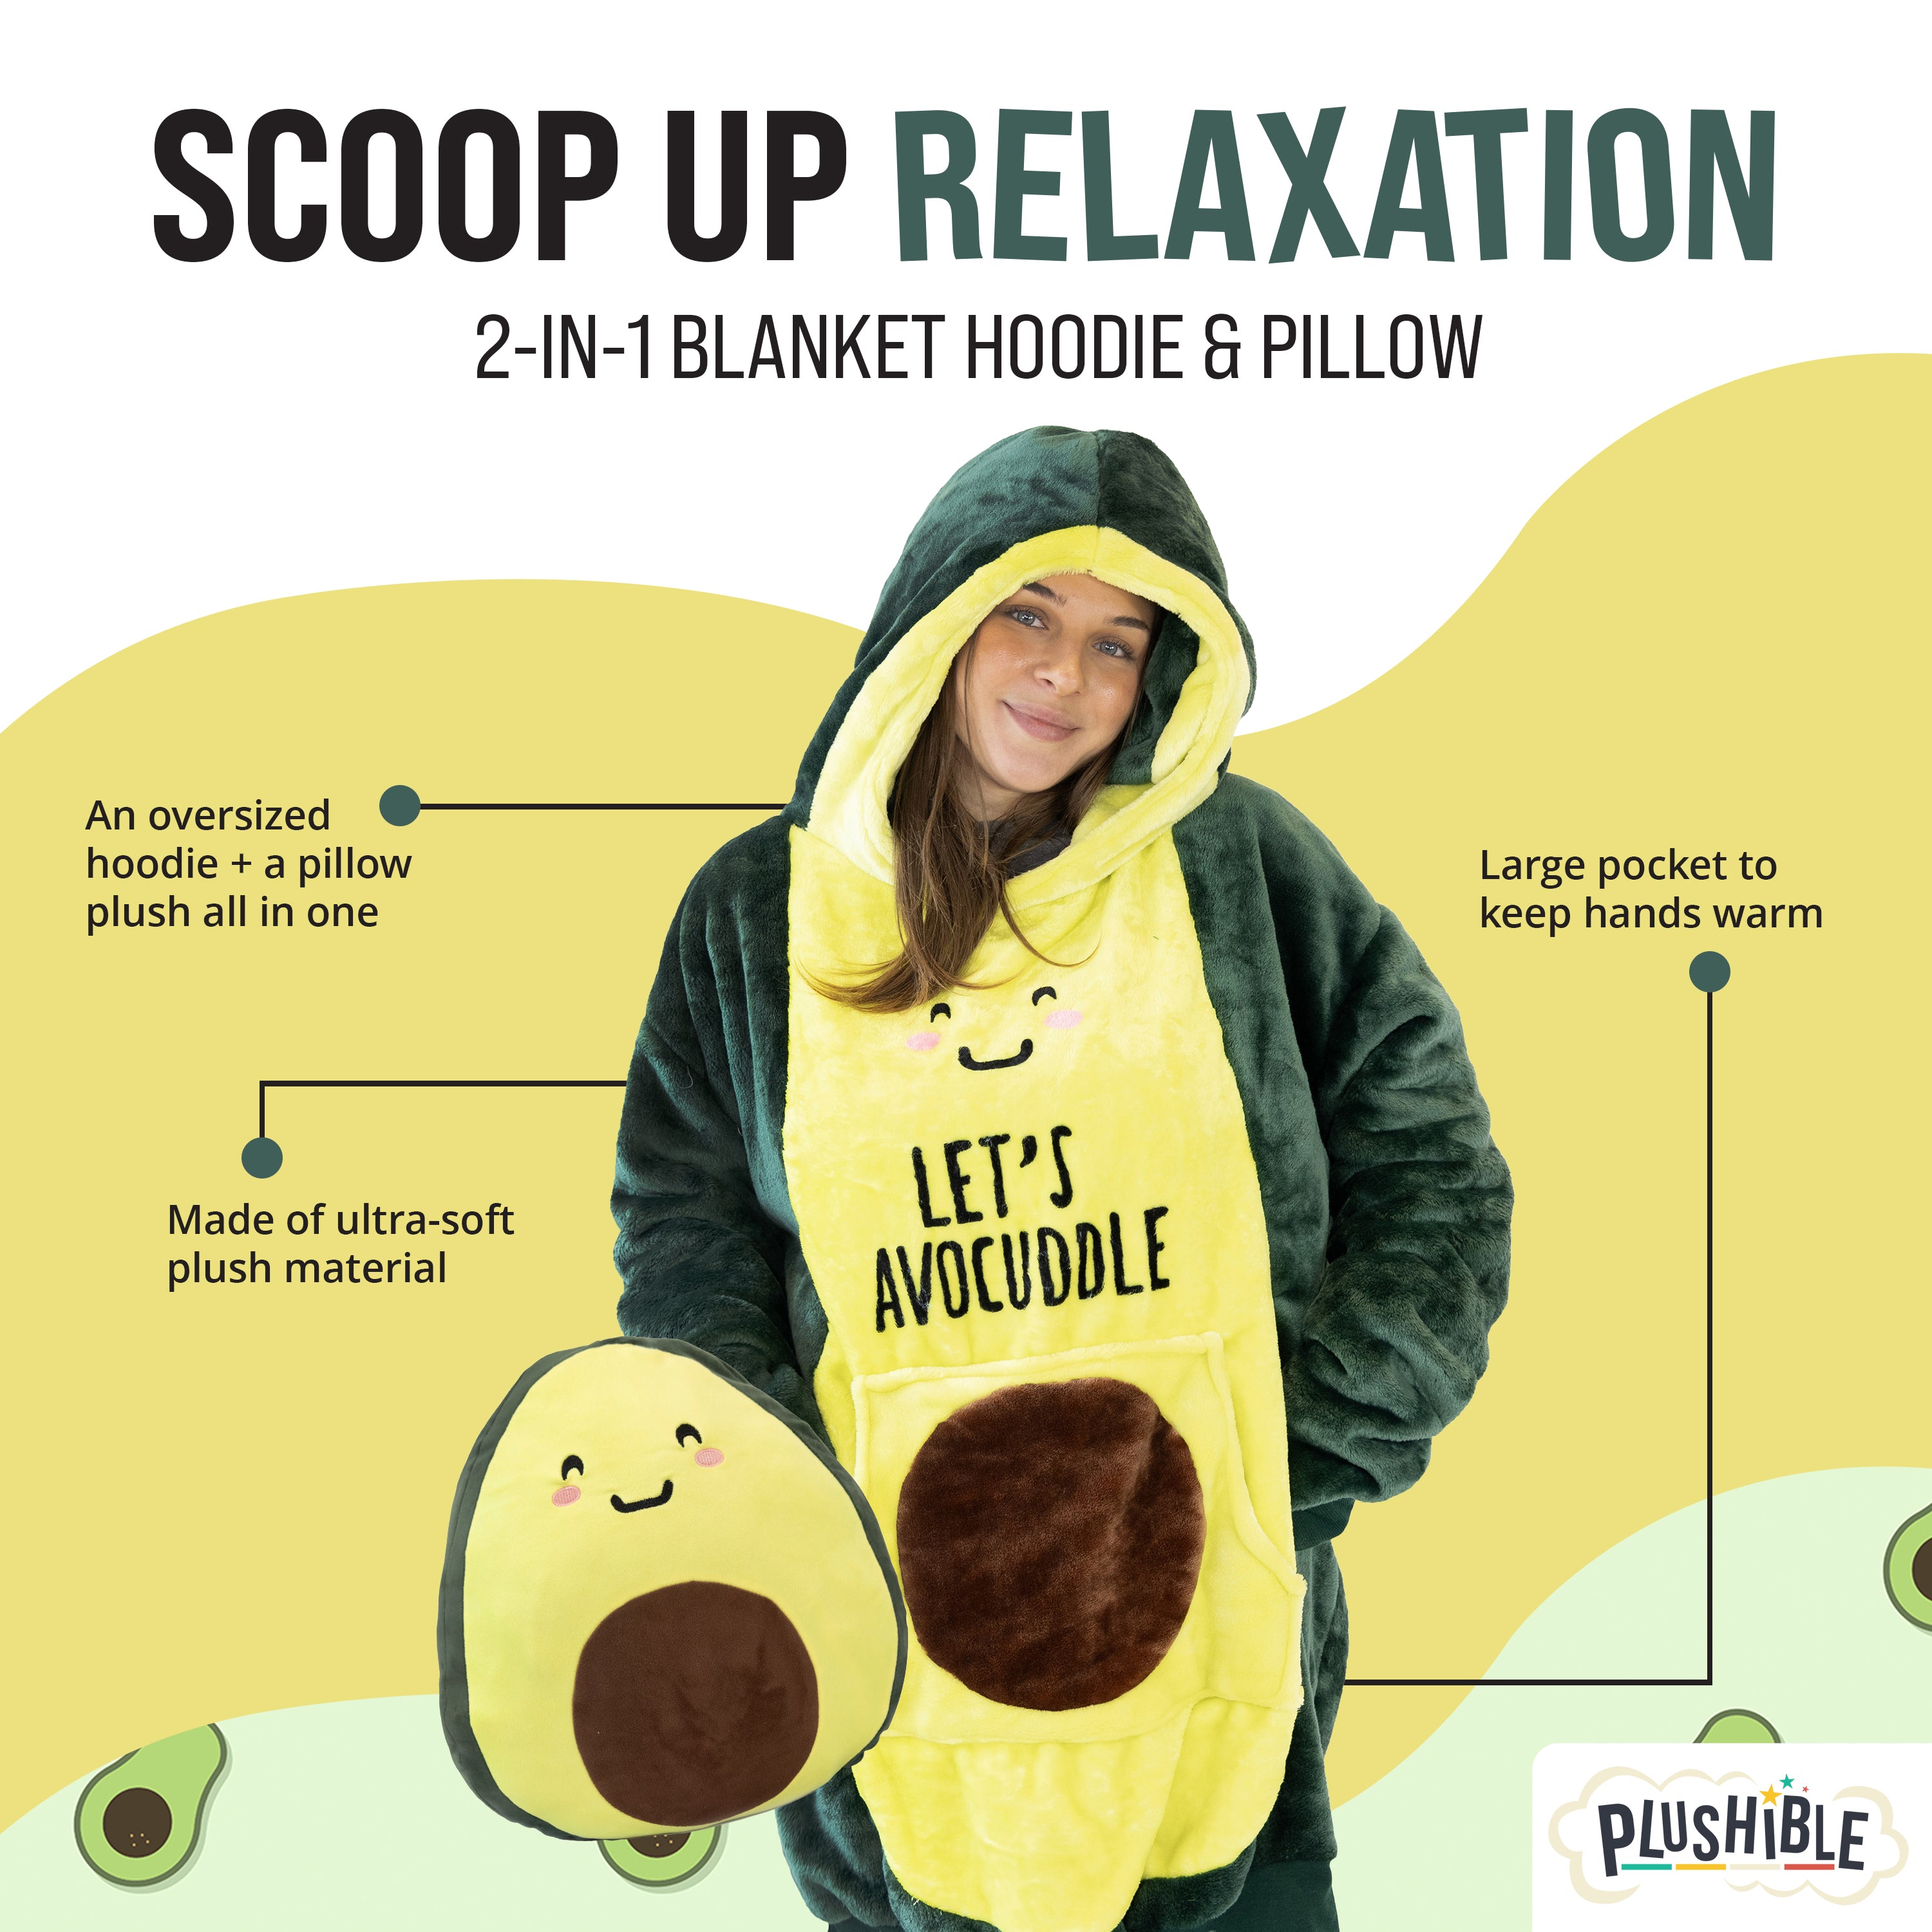 Avocado Snugible 2-in-1 Blanket Hoodie & Pillow